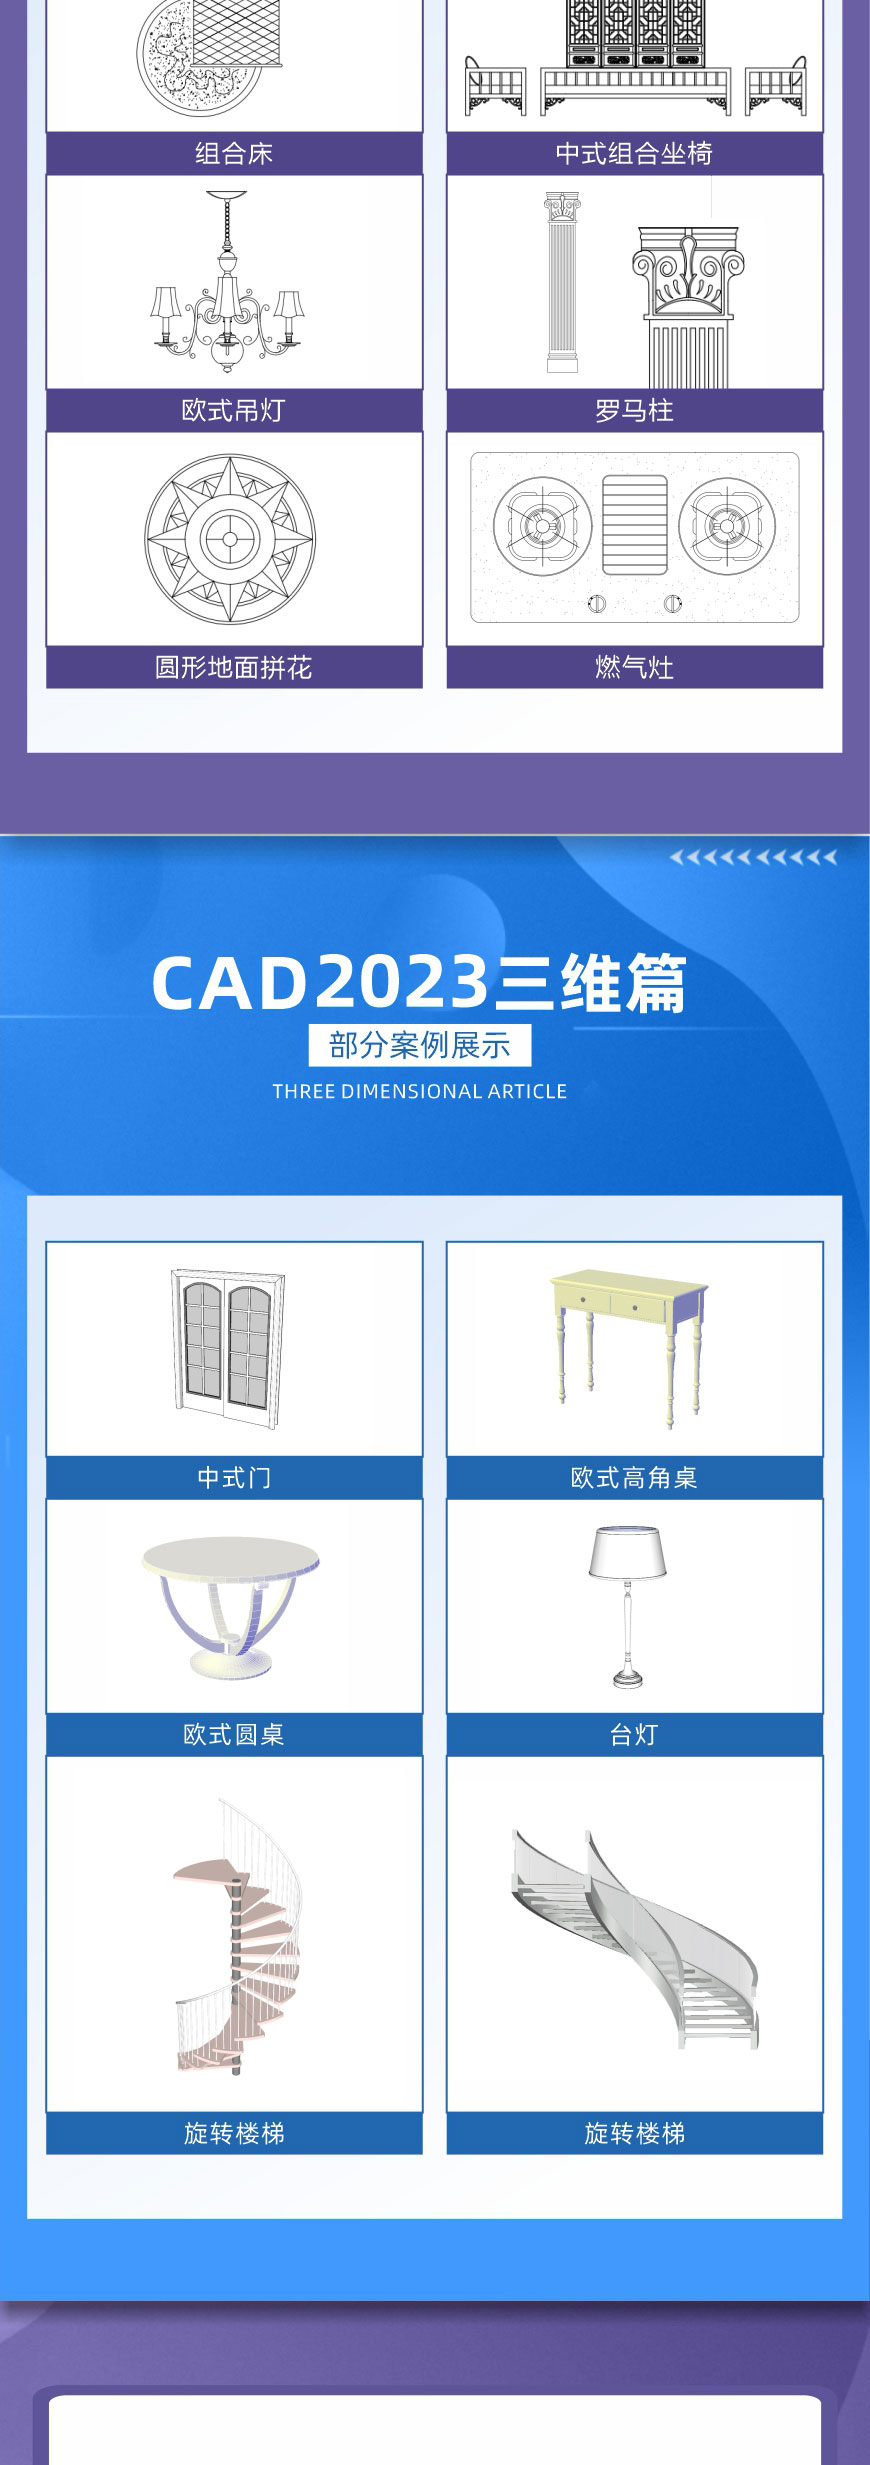 CAD2022零基础入门到精通室内设计课程视频教程